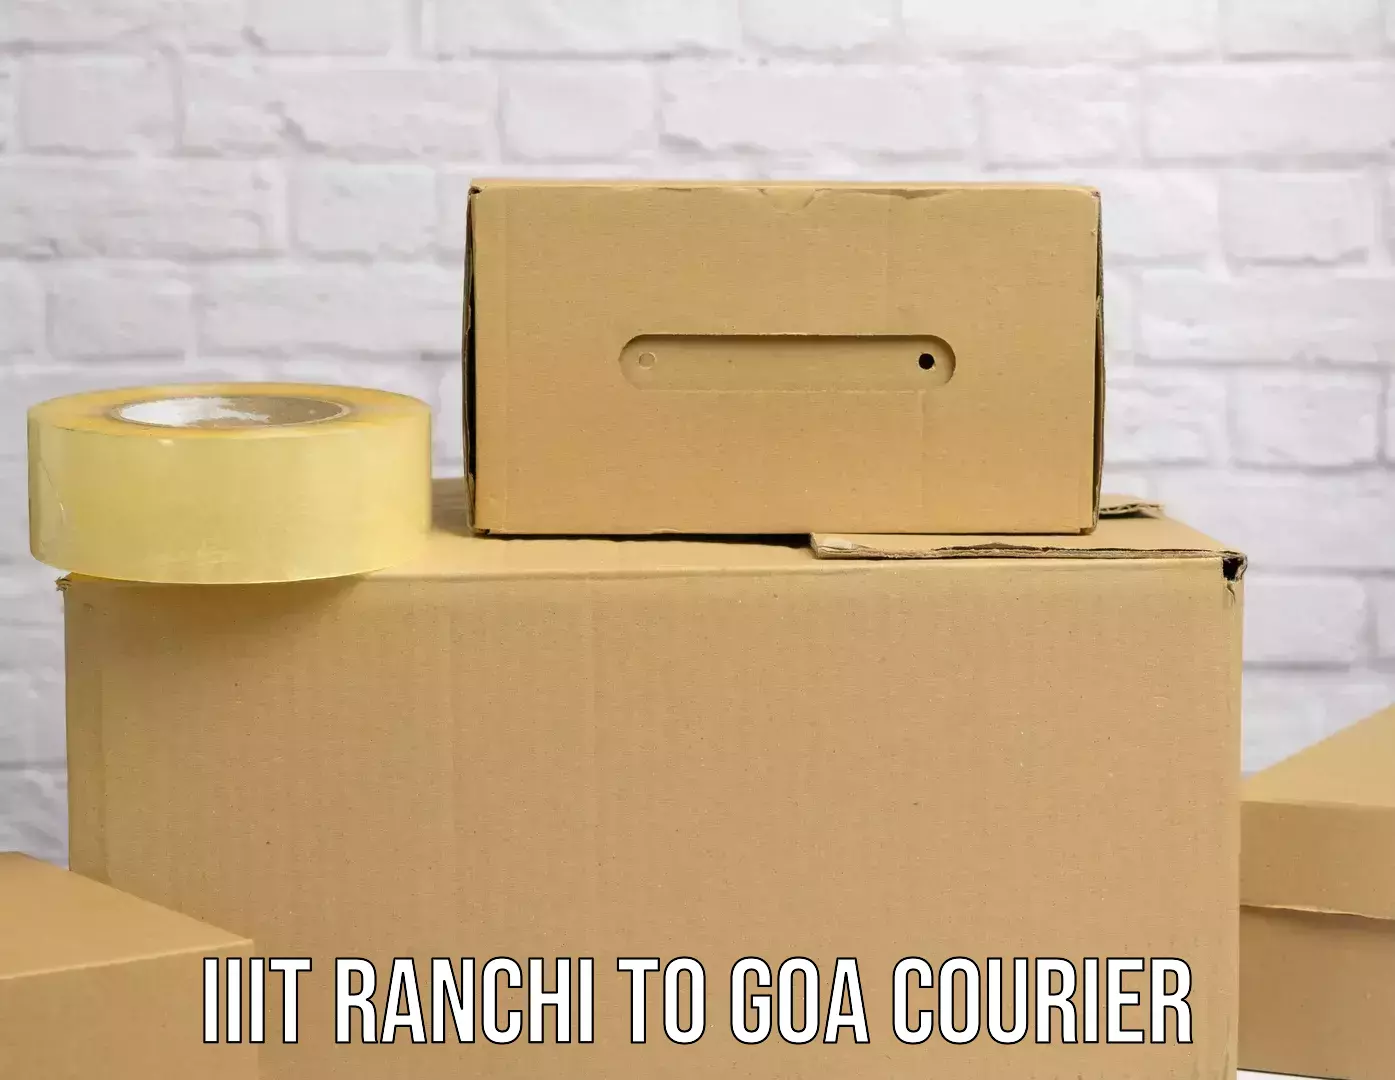 Premium delivery services IIIT Ranchi to Vasco da Gama